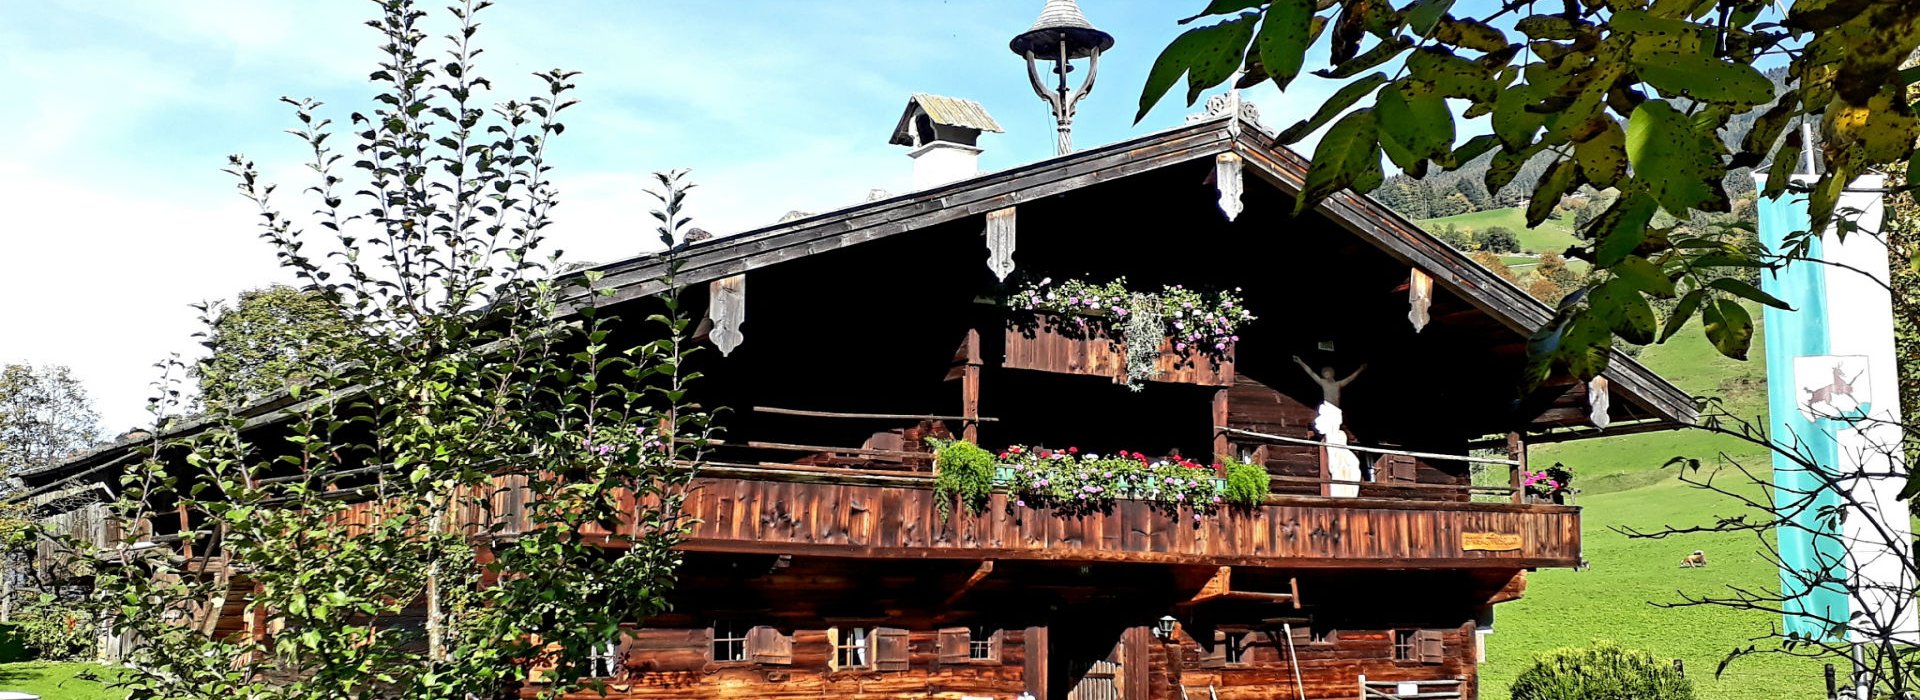 Bauernhausmuseum Kitzbühel